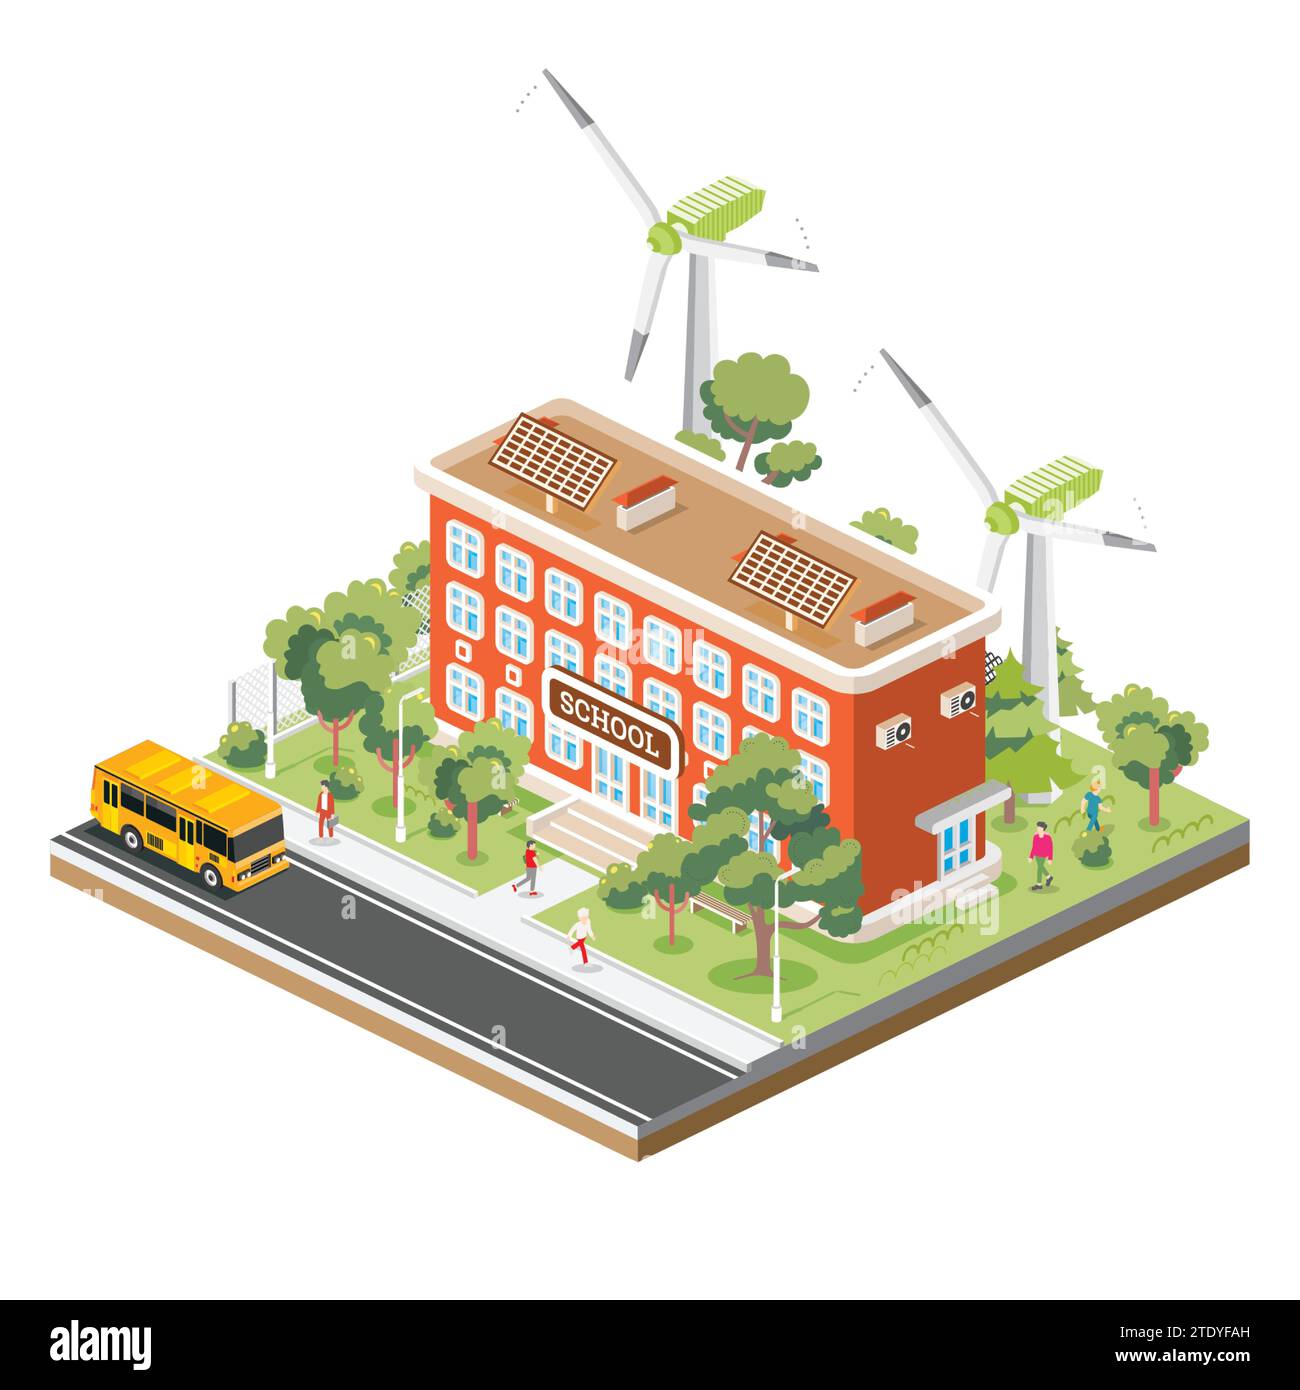 Edificio scolastico isometrico con pannelli solari e turbine eoliche isolate su sfondo bianco. Illustrazione vettoriale. Trees and Road. Illustrazione Vettoriale